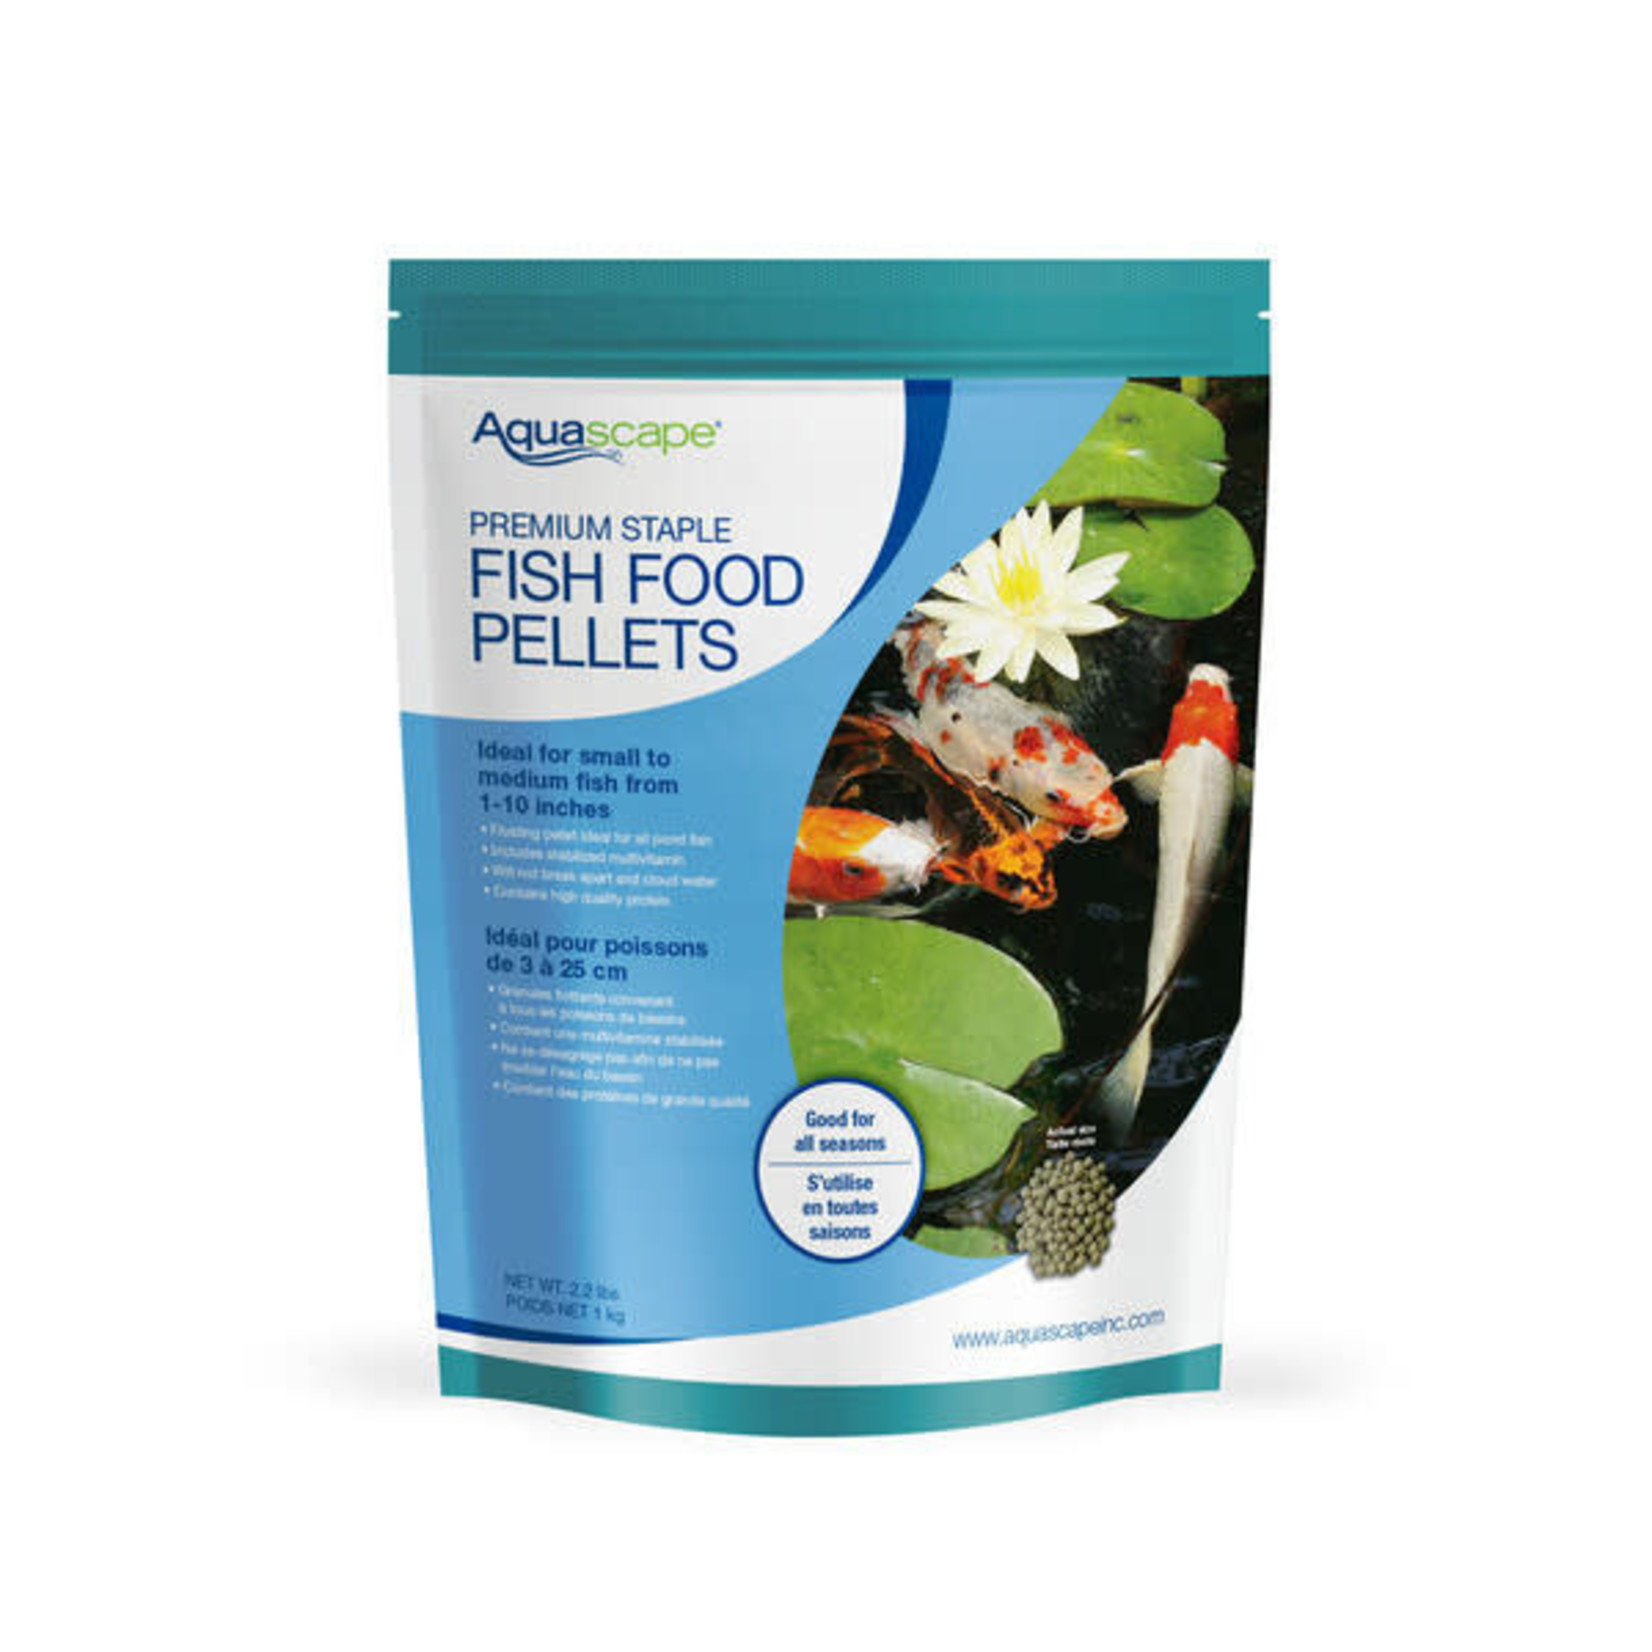 Aquascape Premium Staple Fish Food Pellets - Small Pellets - 2.2 lbs / 1 kg